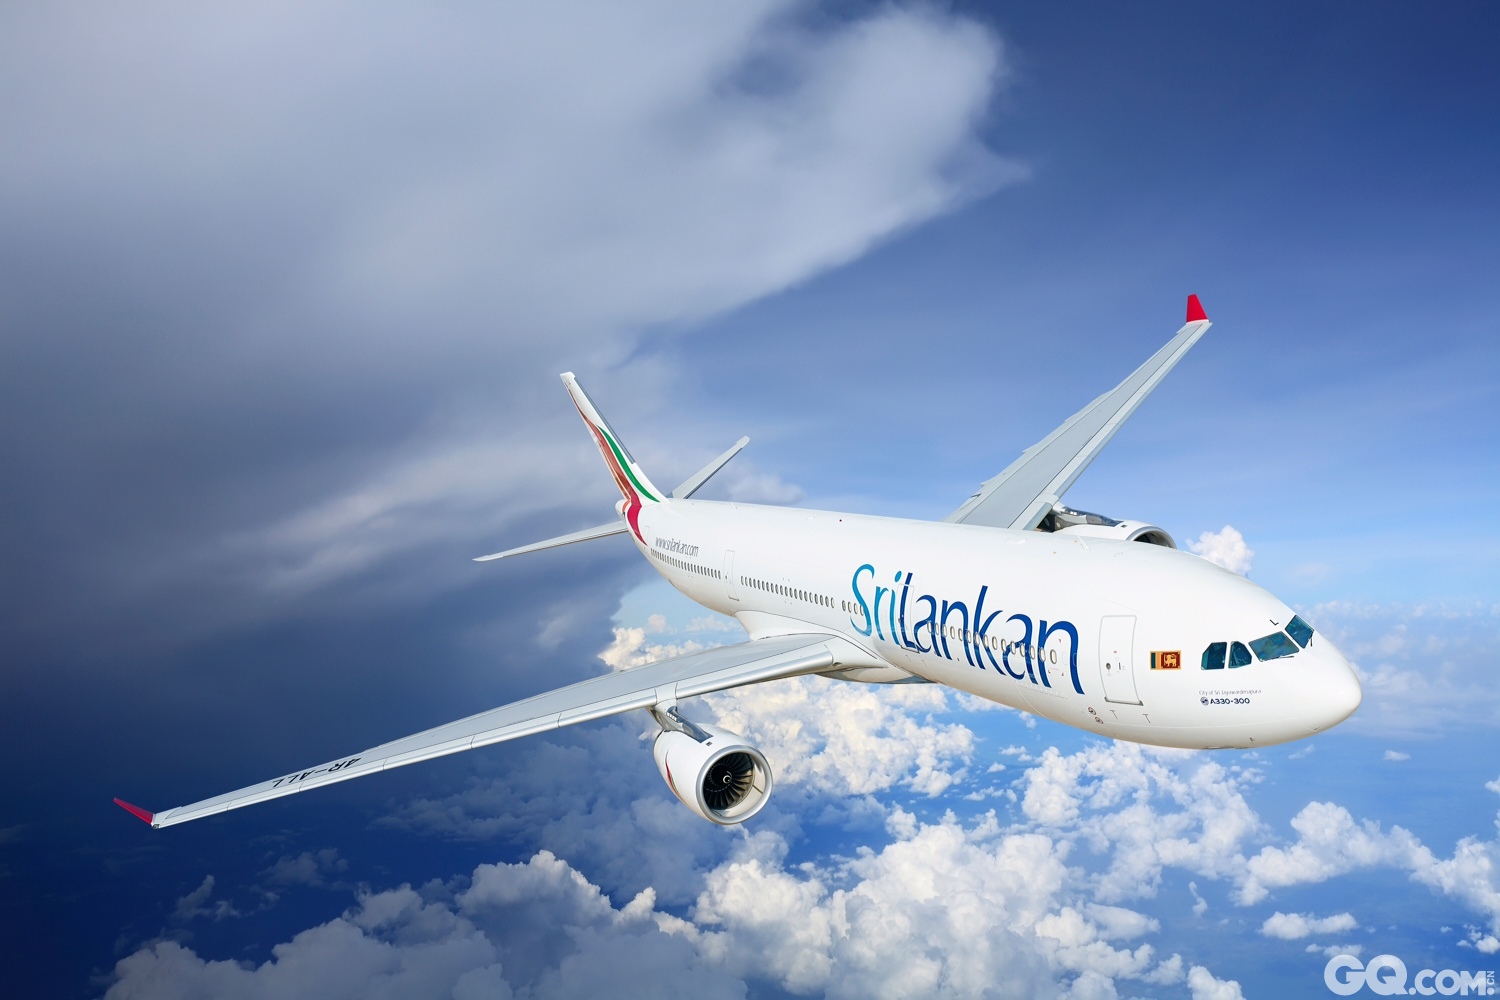 斯航多年来一直是到达马尔代夫首都马累最大的航空运营商，现在，斯航将成为运营到达马尔代夫群岛南部甘岛的唯一航空公司。